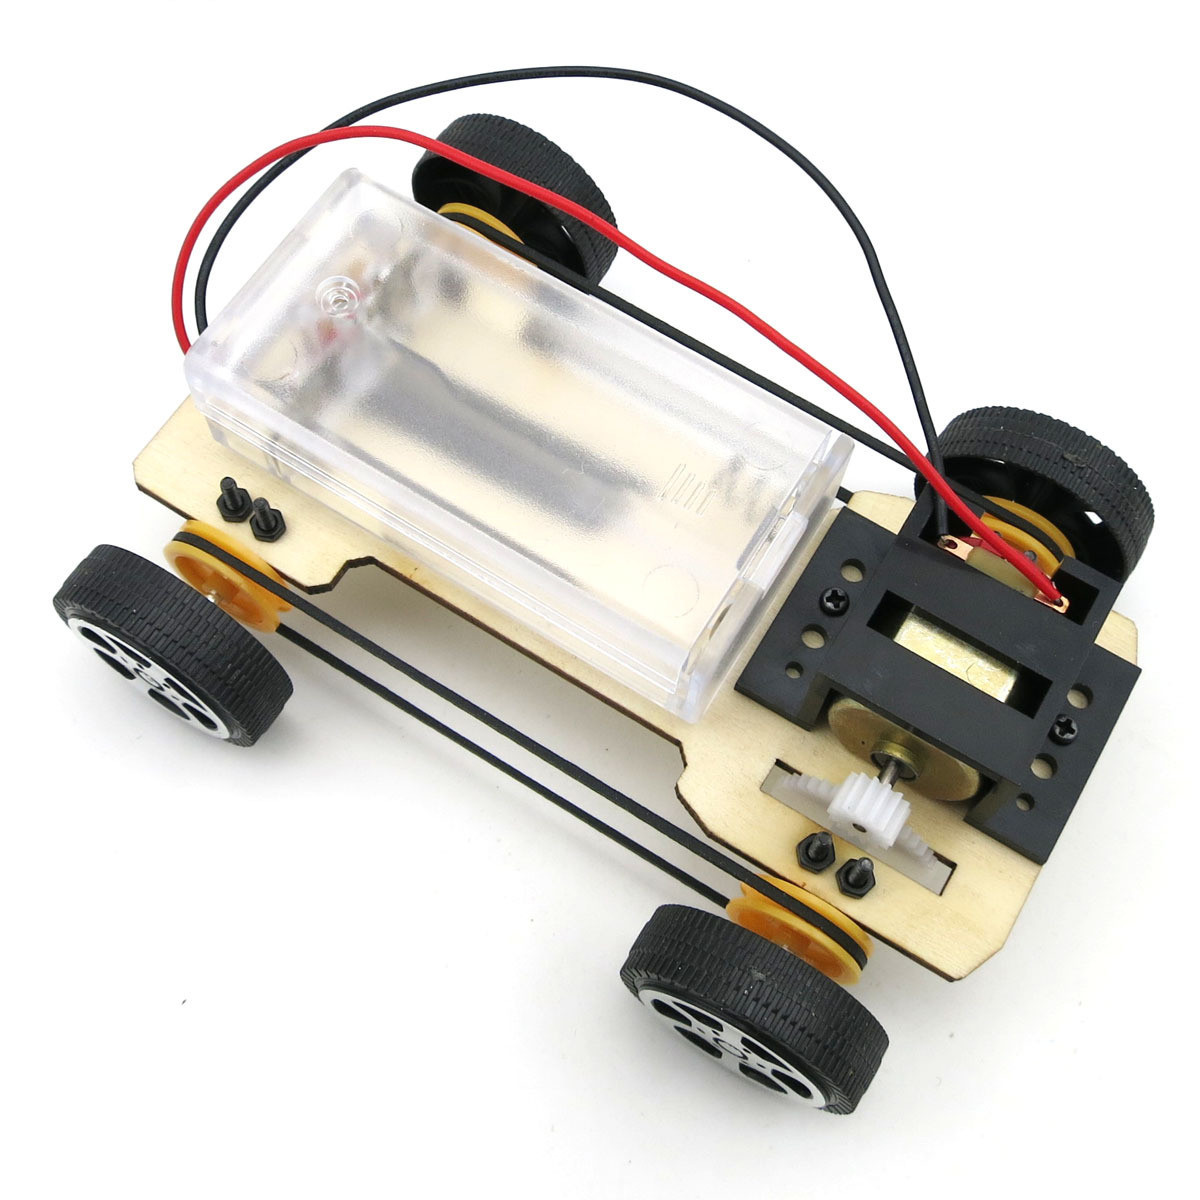 手工四驱车 DIY四驱车 科技小制作创意拼装玩具趣味科学实验套装-阿里巴巴